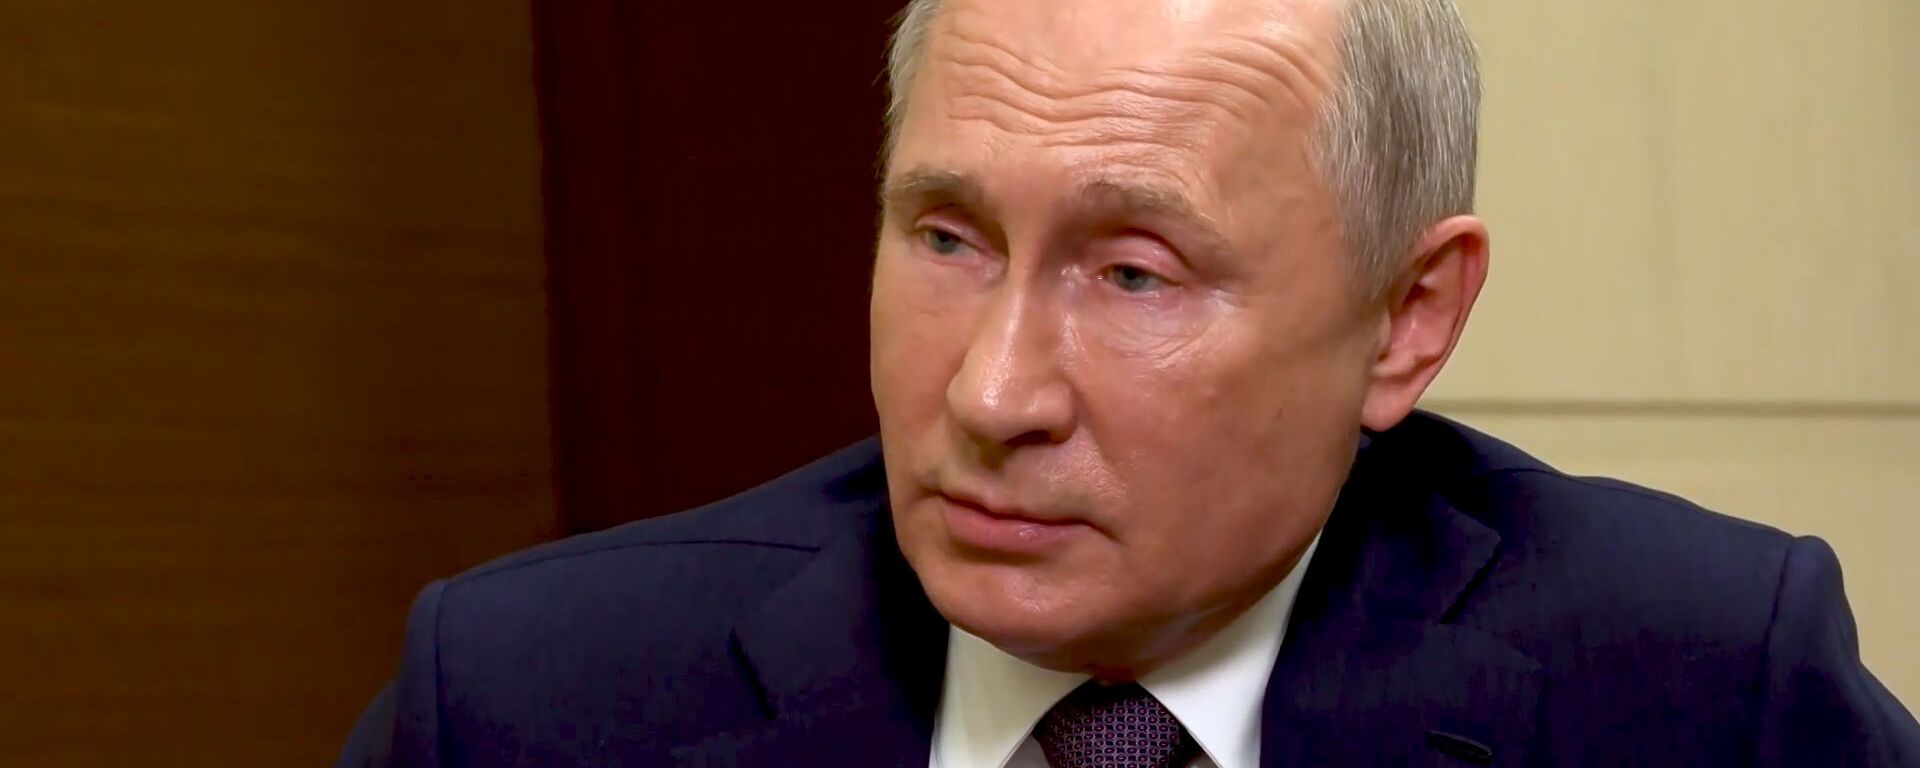 Putin a explicat de ce nu l-a felicitat pe Biden  - Sputnik Moldova, 1920, 27.01.2021